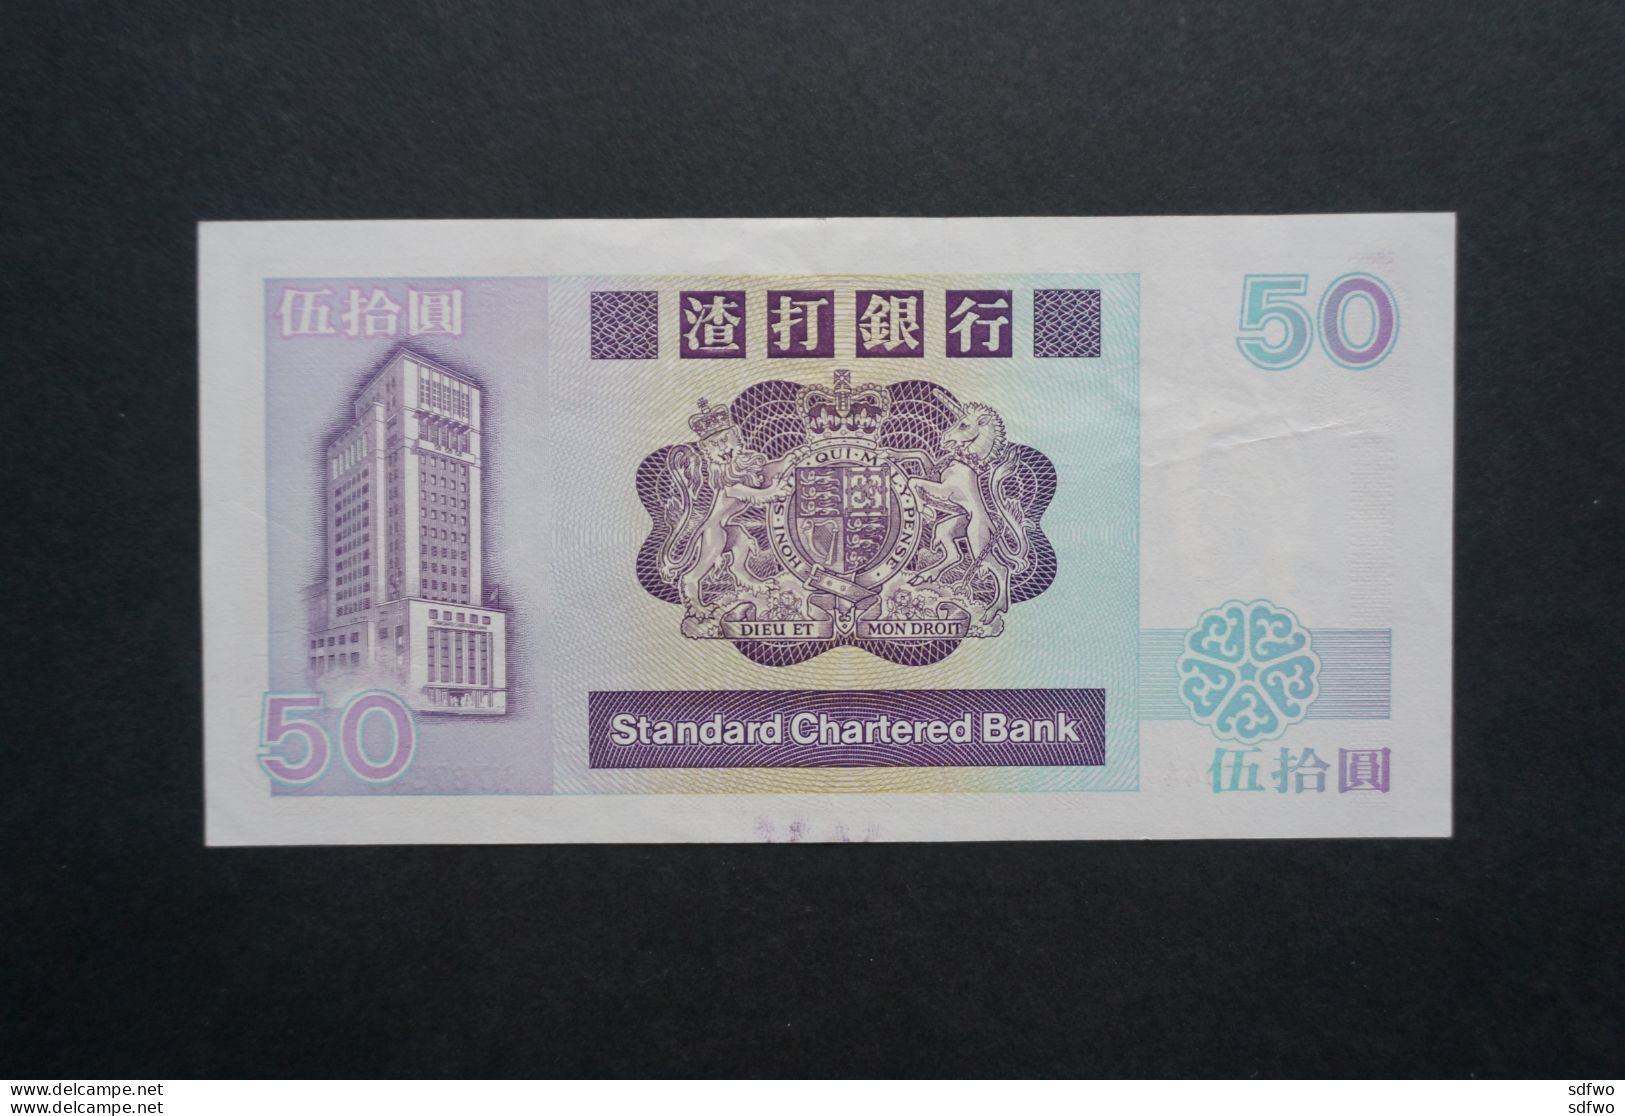 (Tv) 1992 Hong Kong Issue - Standard Chartered Bank 50 DOLLARS ($50)  #H767344 - Hongkong